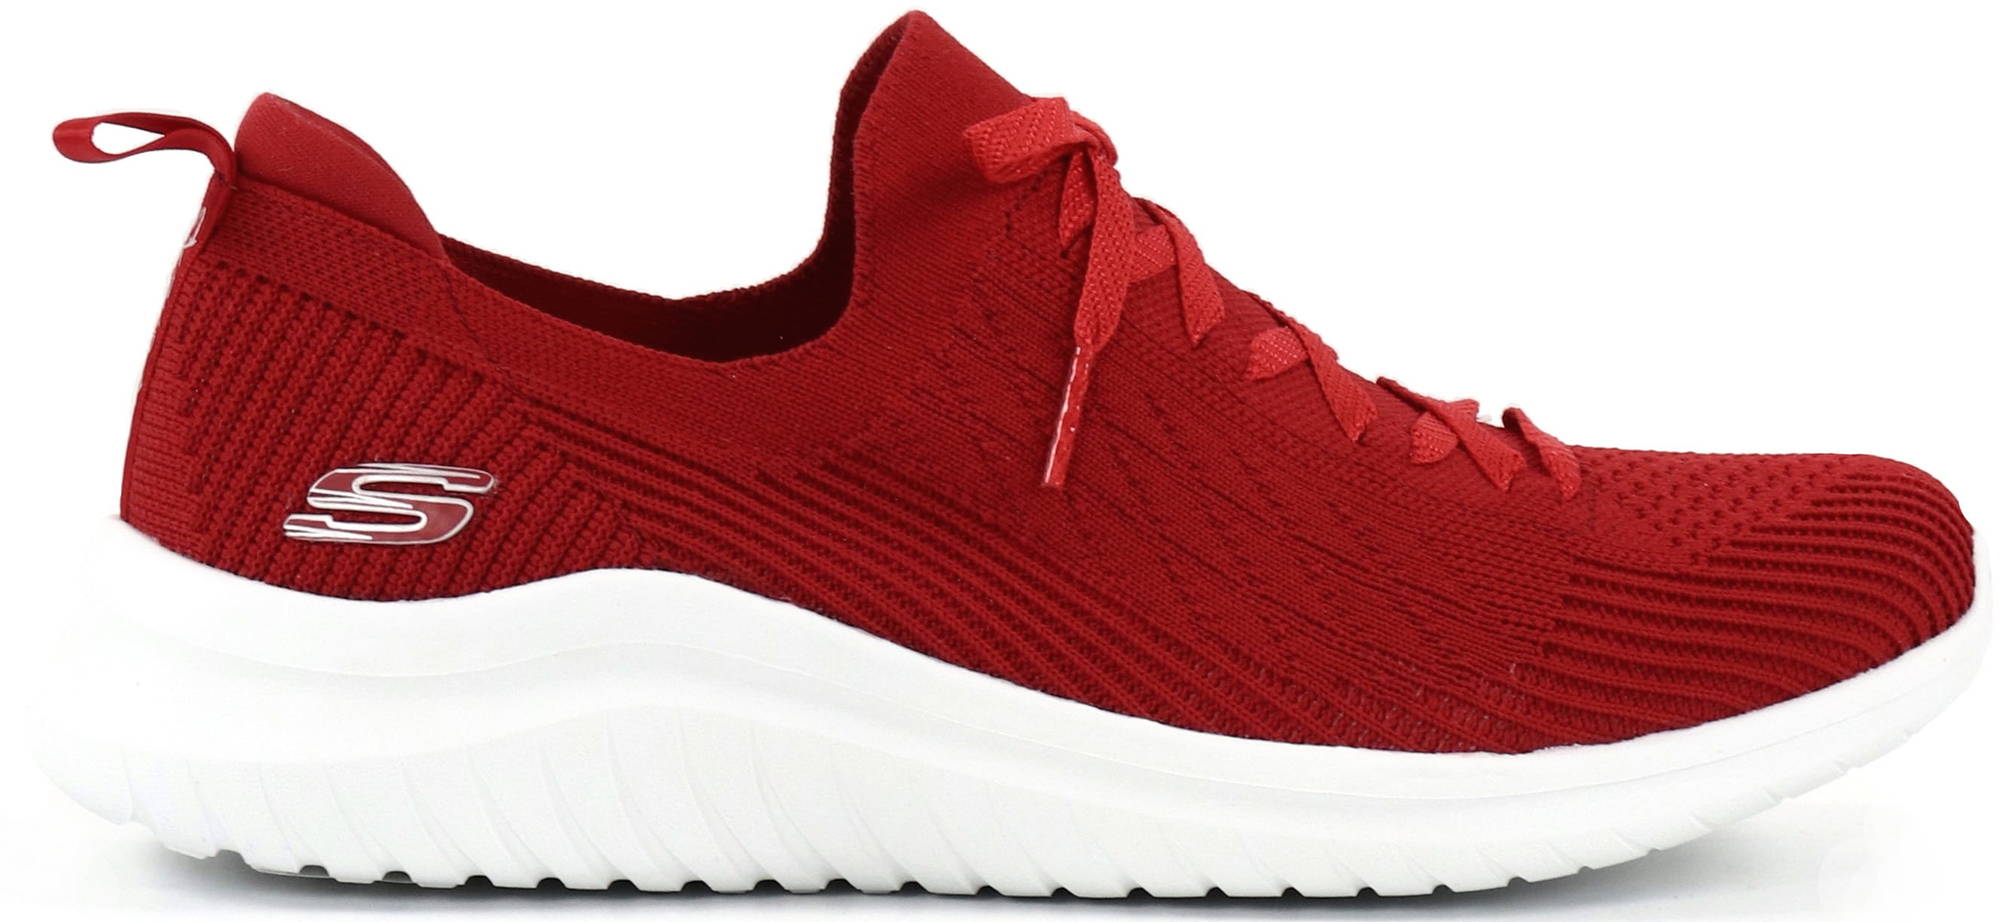 Sneakers 13356 Ultra flex, red - Stilettoshop.eu webstore